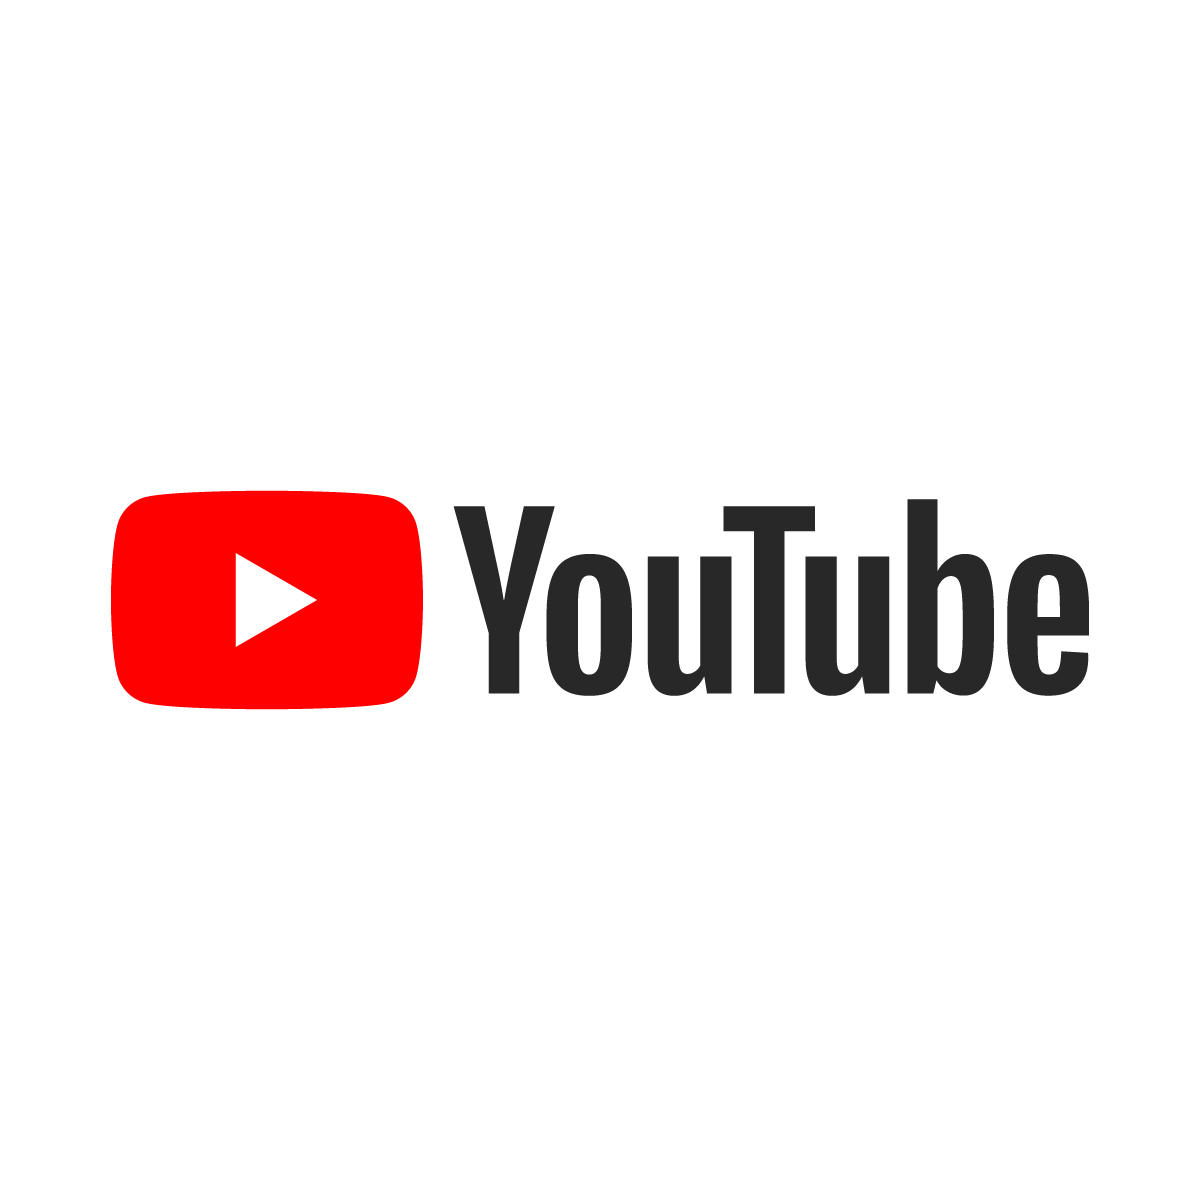 Как Правильно Начать Канал На YouTube В 2021 Году?